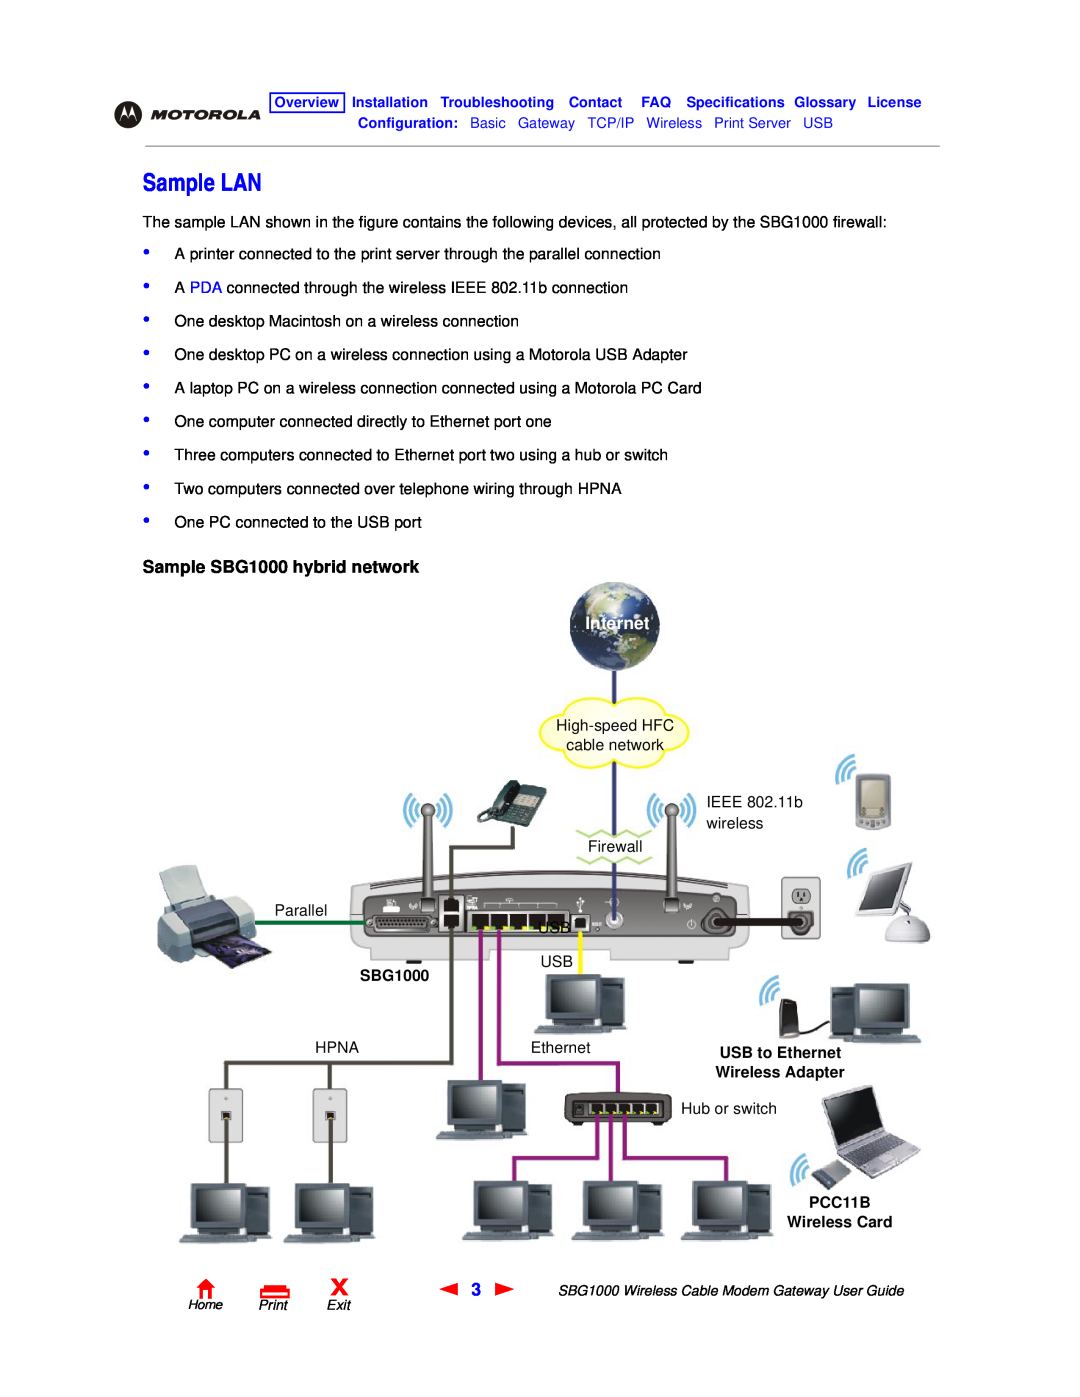 Motorola manual Sample LAN, Sample SBG1000 hybrid network, USB to Ethernet, PCC11B Wireless Card, Internet 